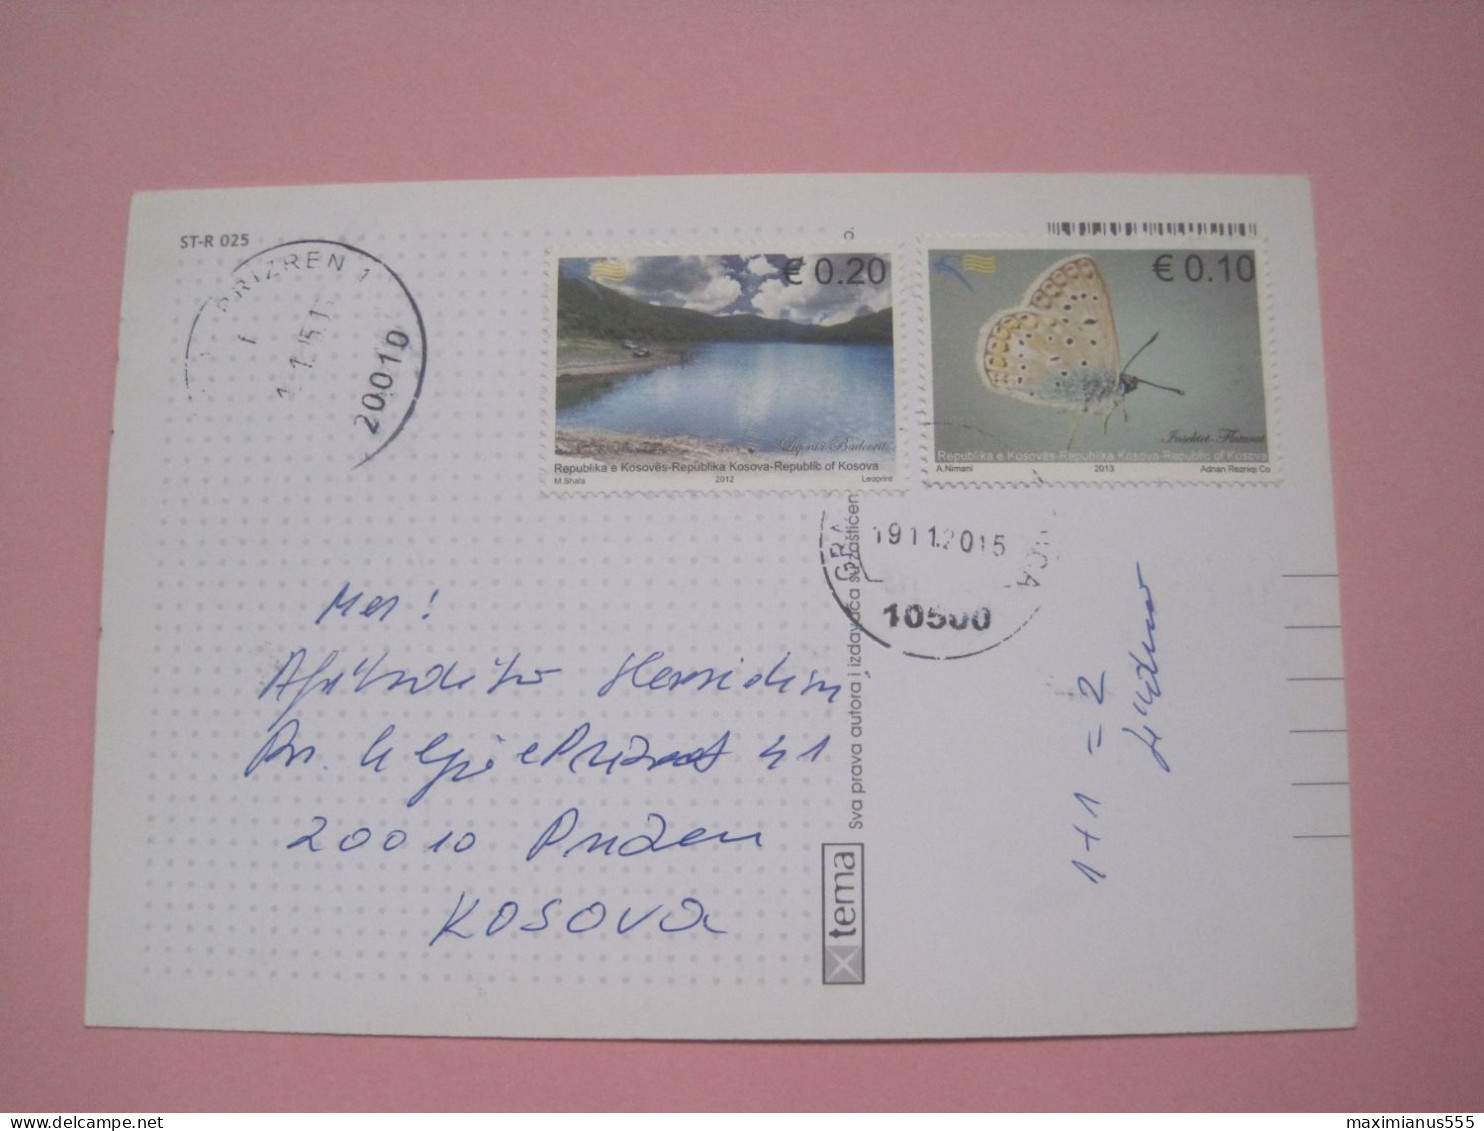 Kosovo Airmail Postcard Sent From Gracanica To Prizren 2015 (10) - Kosovo